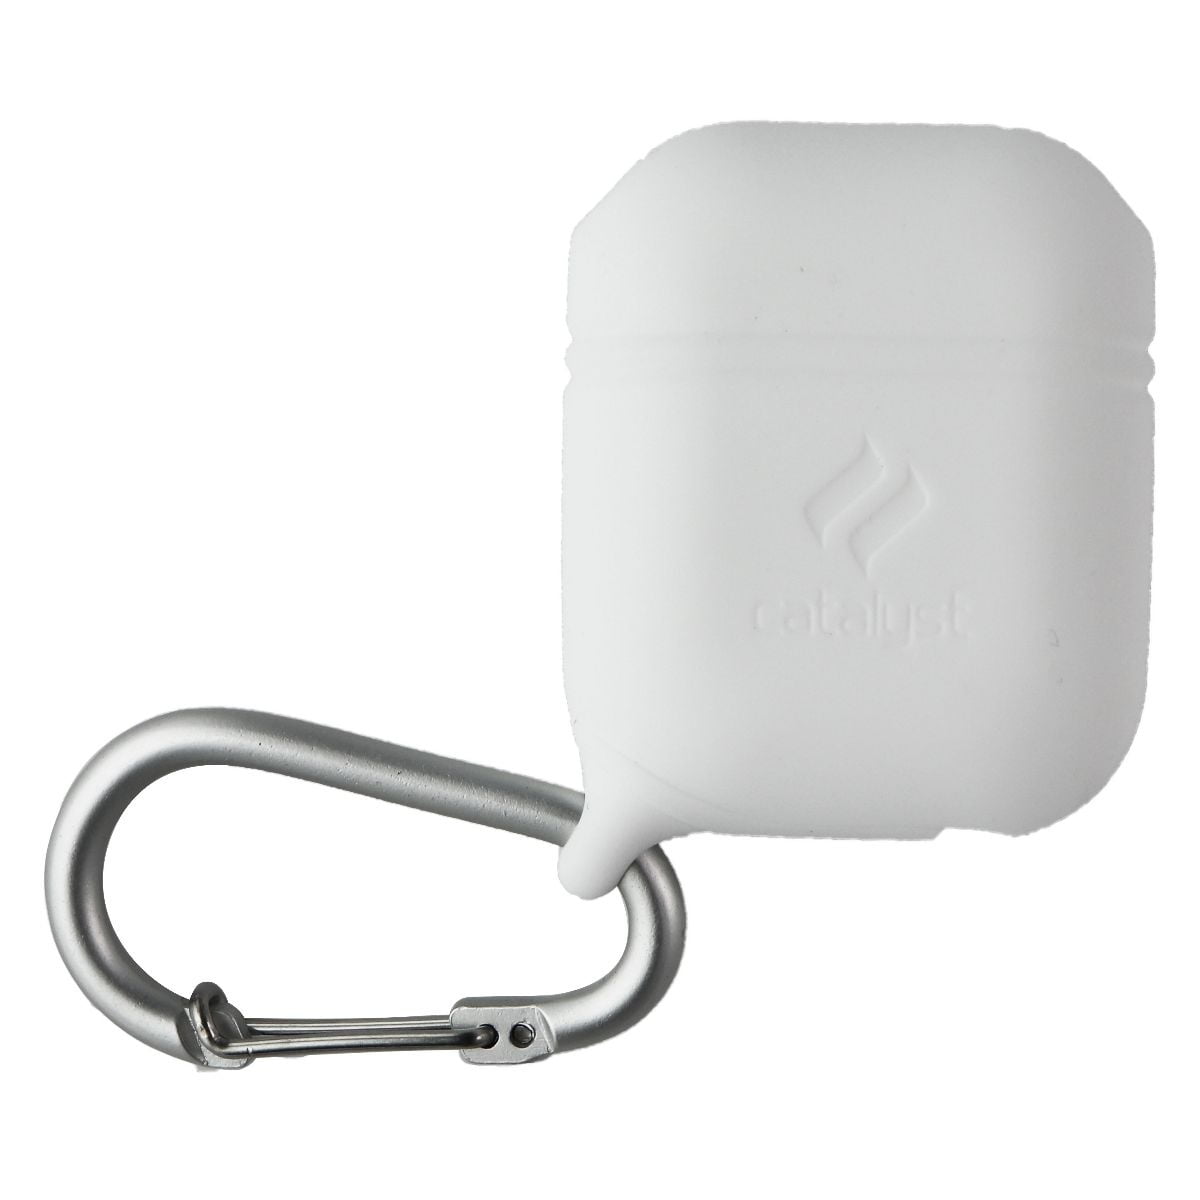 Waterproof Case for Apple 2nd Gen - White (Used) Walmart.com